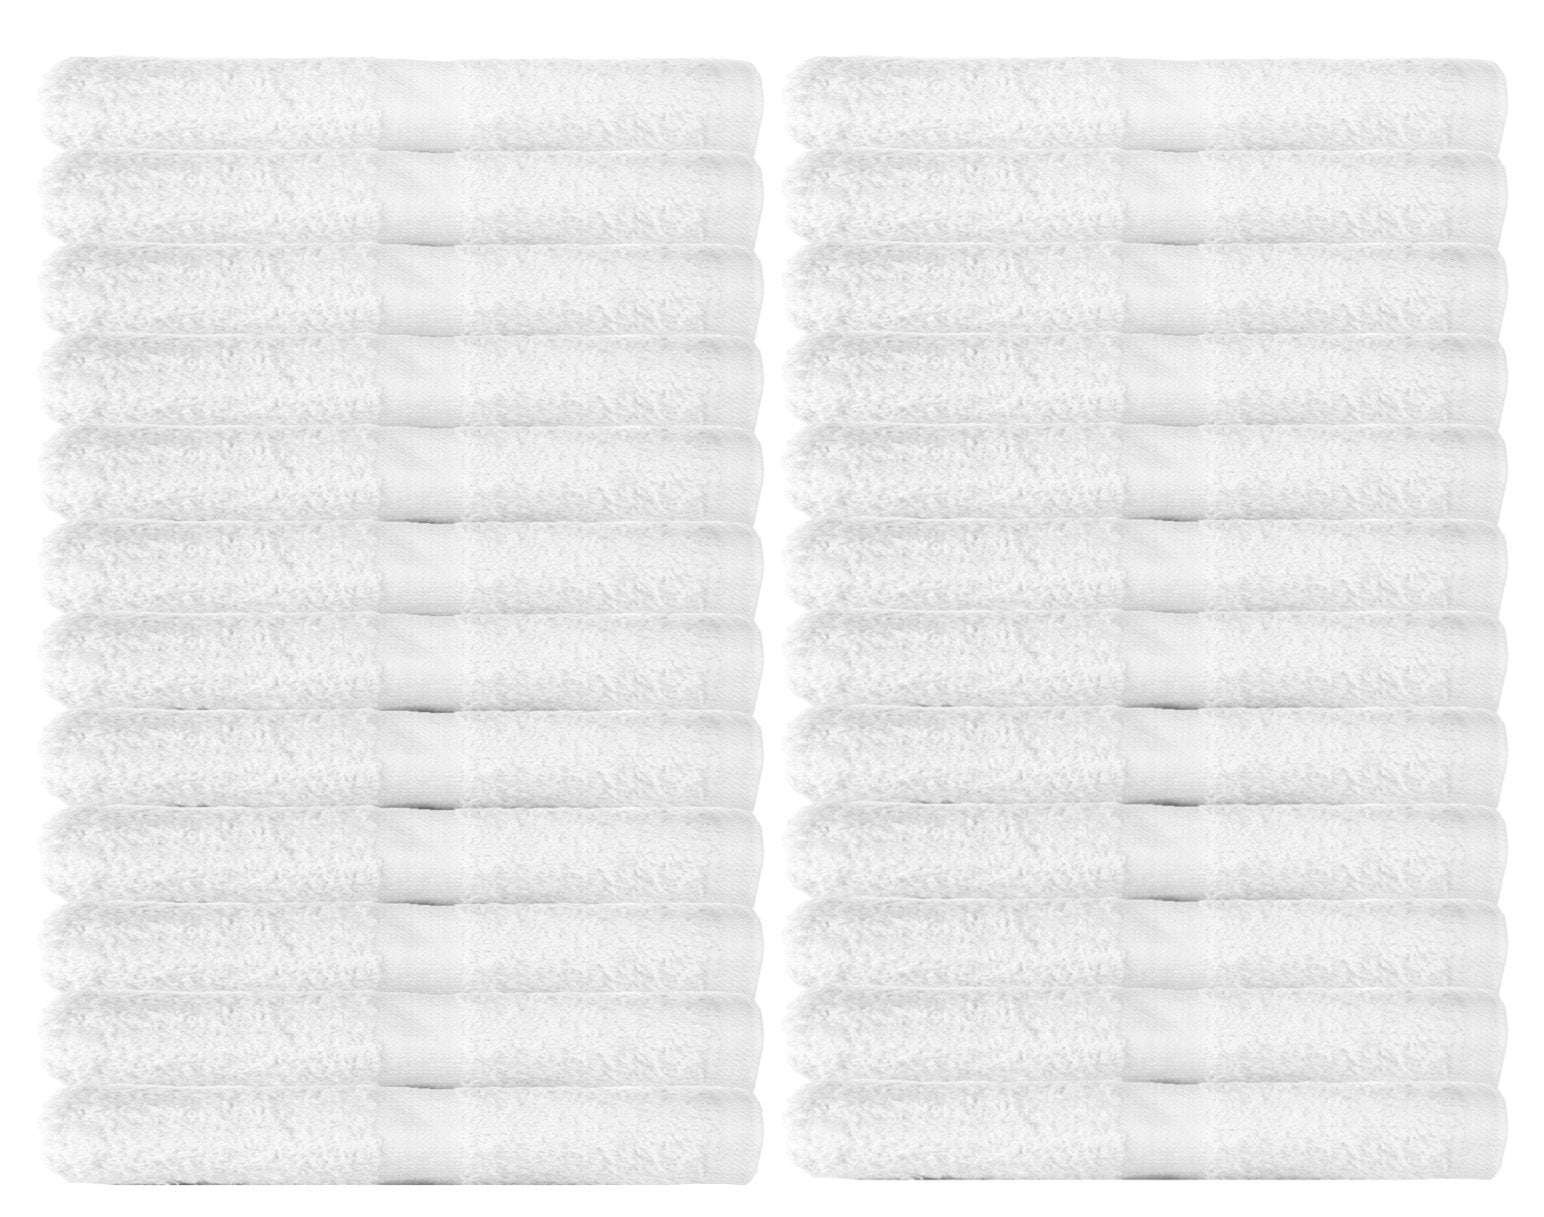 Wholesale Cotton Terry Washcloths 12x12 New White